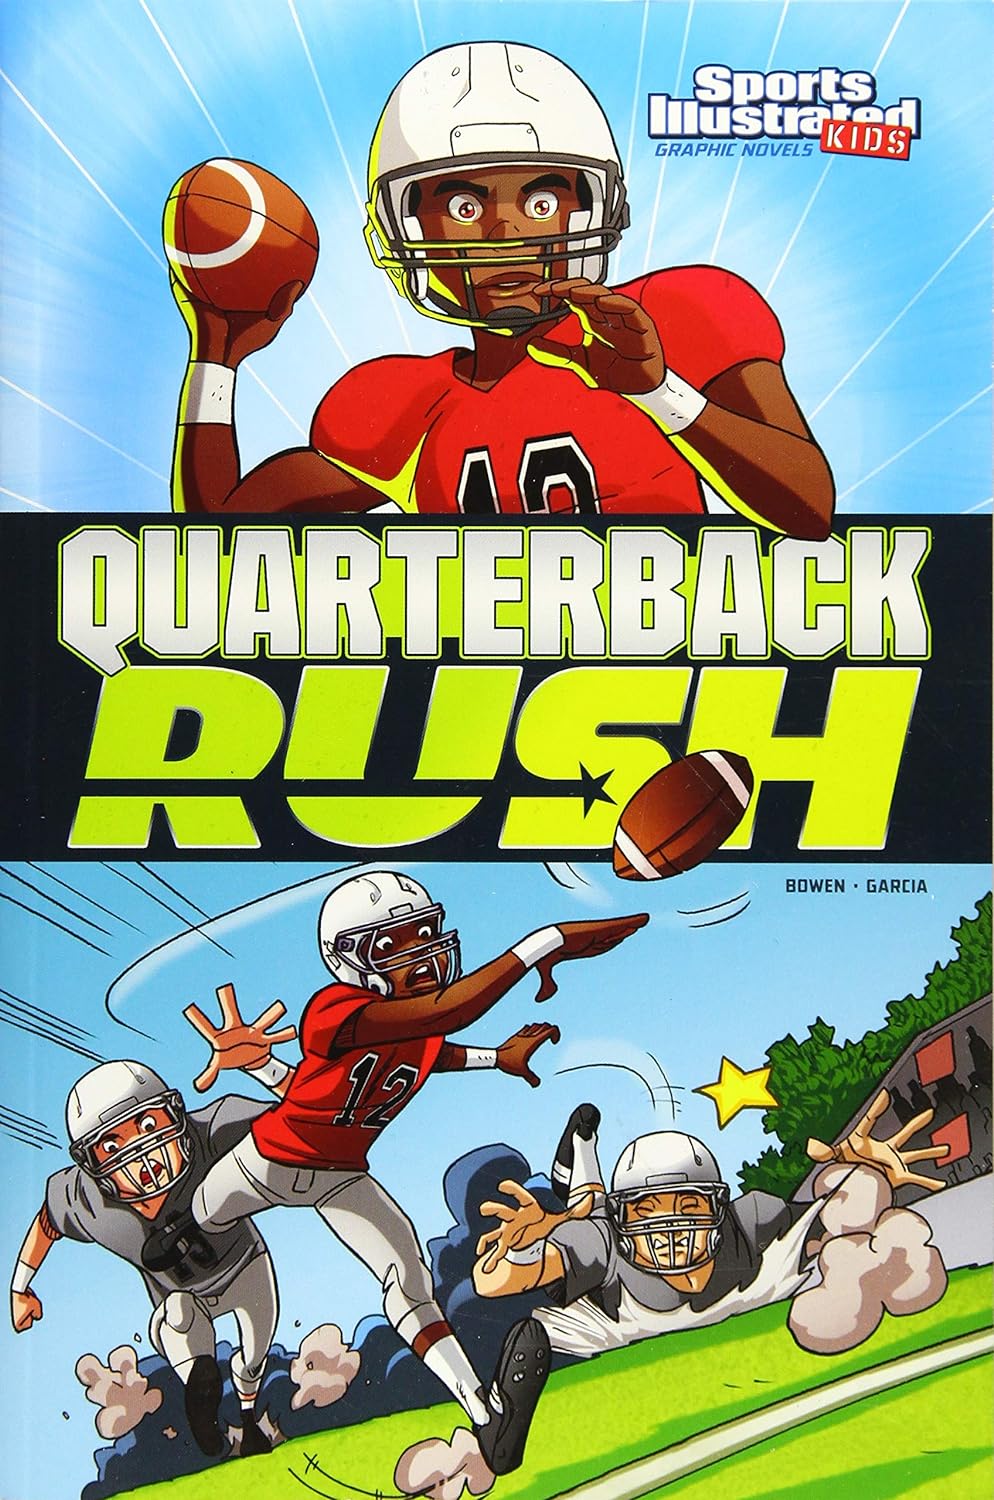 Quarterback Rush